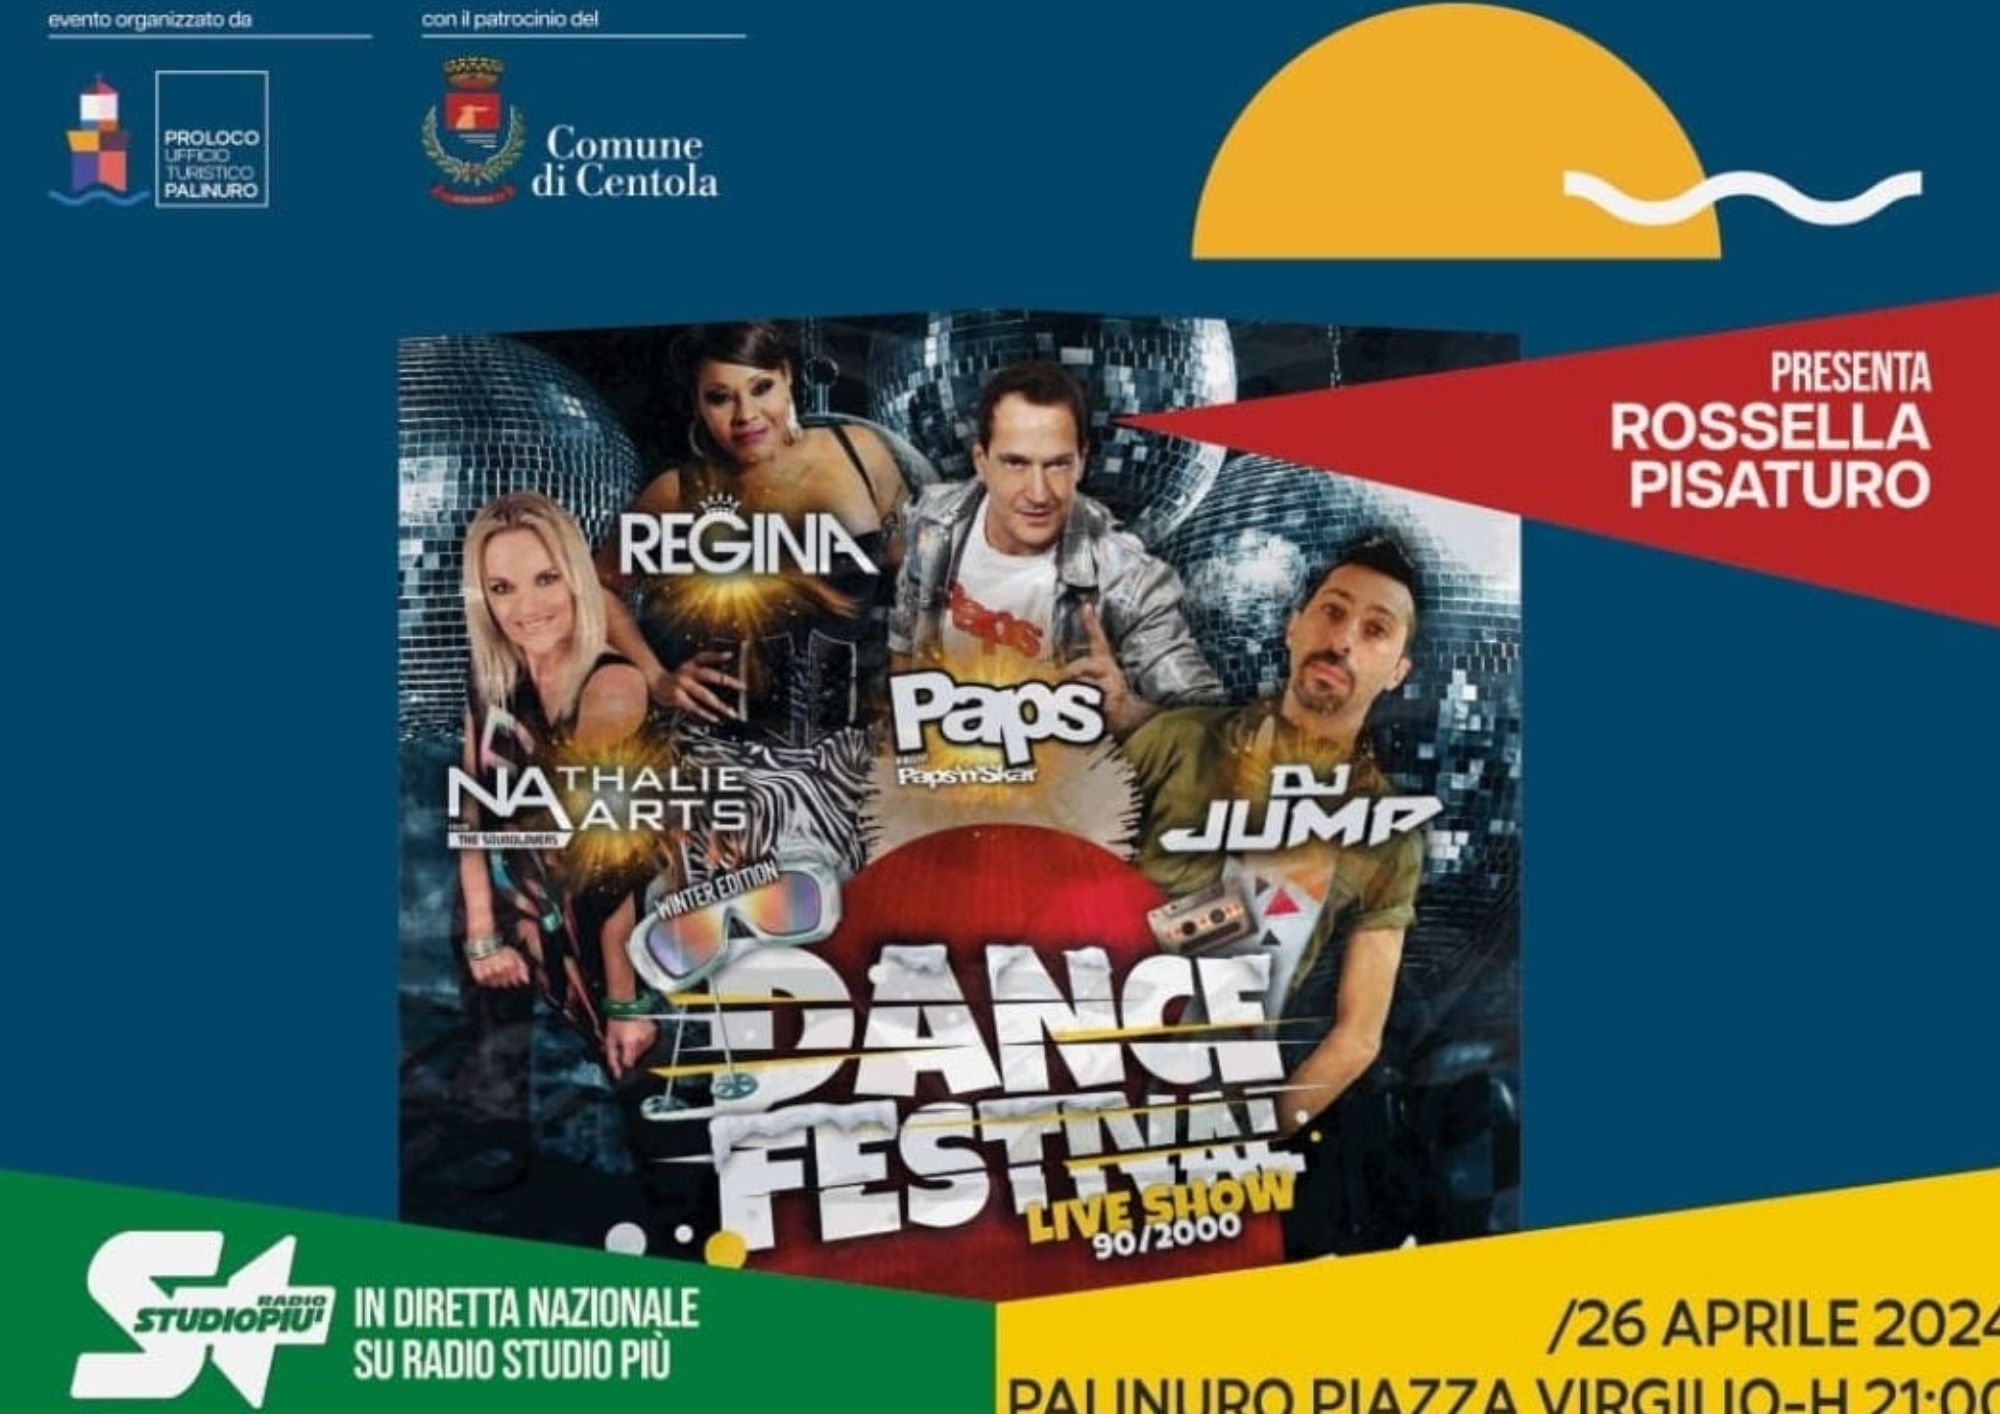 Palinuro, ponte del 25 aprile in musica con Venditti tribute band e Dance festival